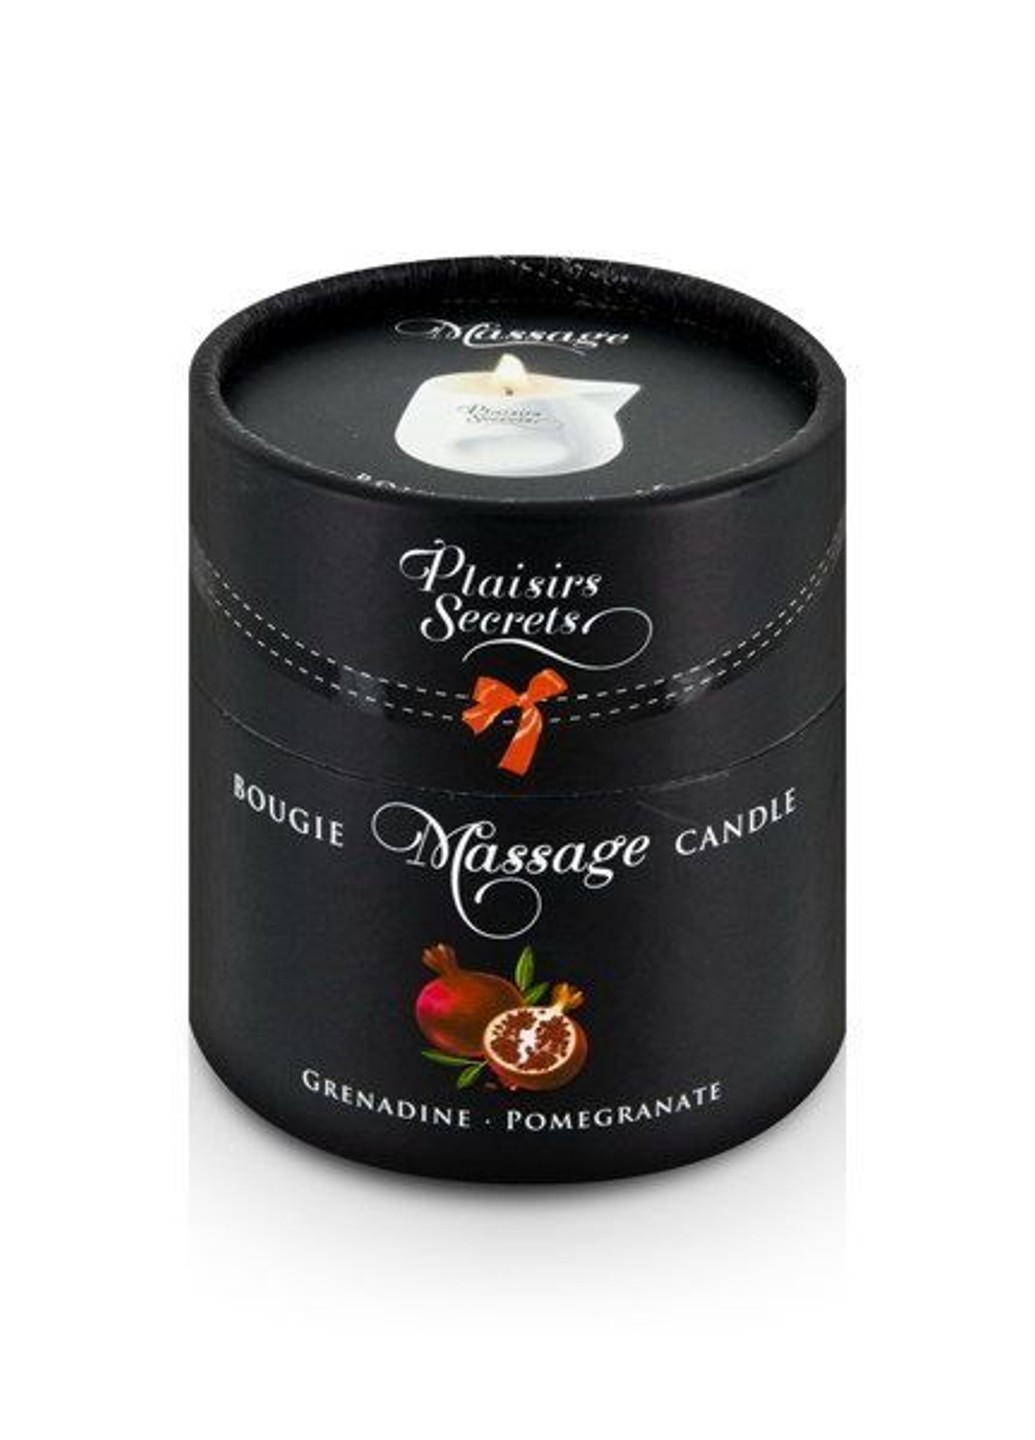 Массажная свеча Pomegranate (80 мл) подарочная упаковка, керамический сосуд Plaisirs Secrets (277236139)